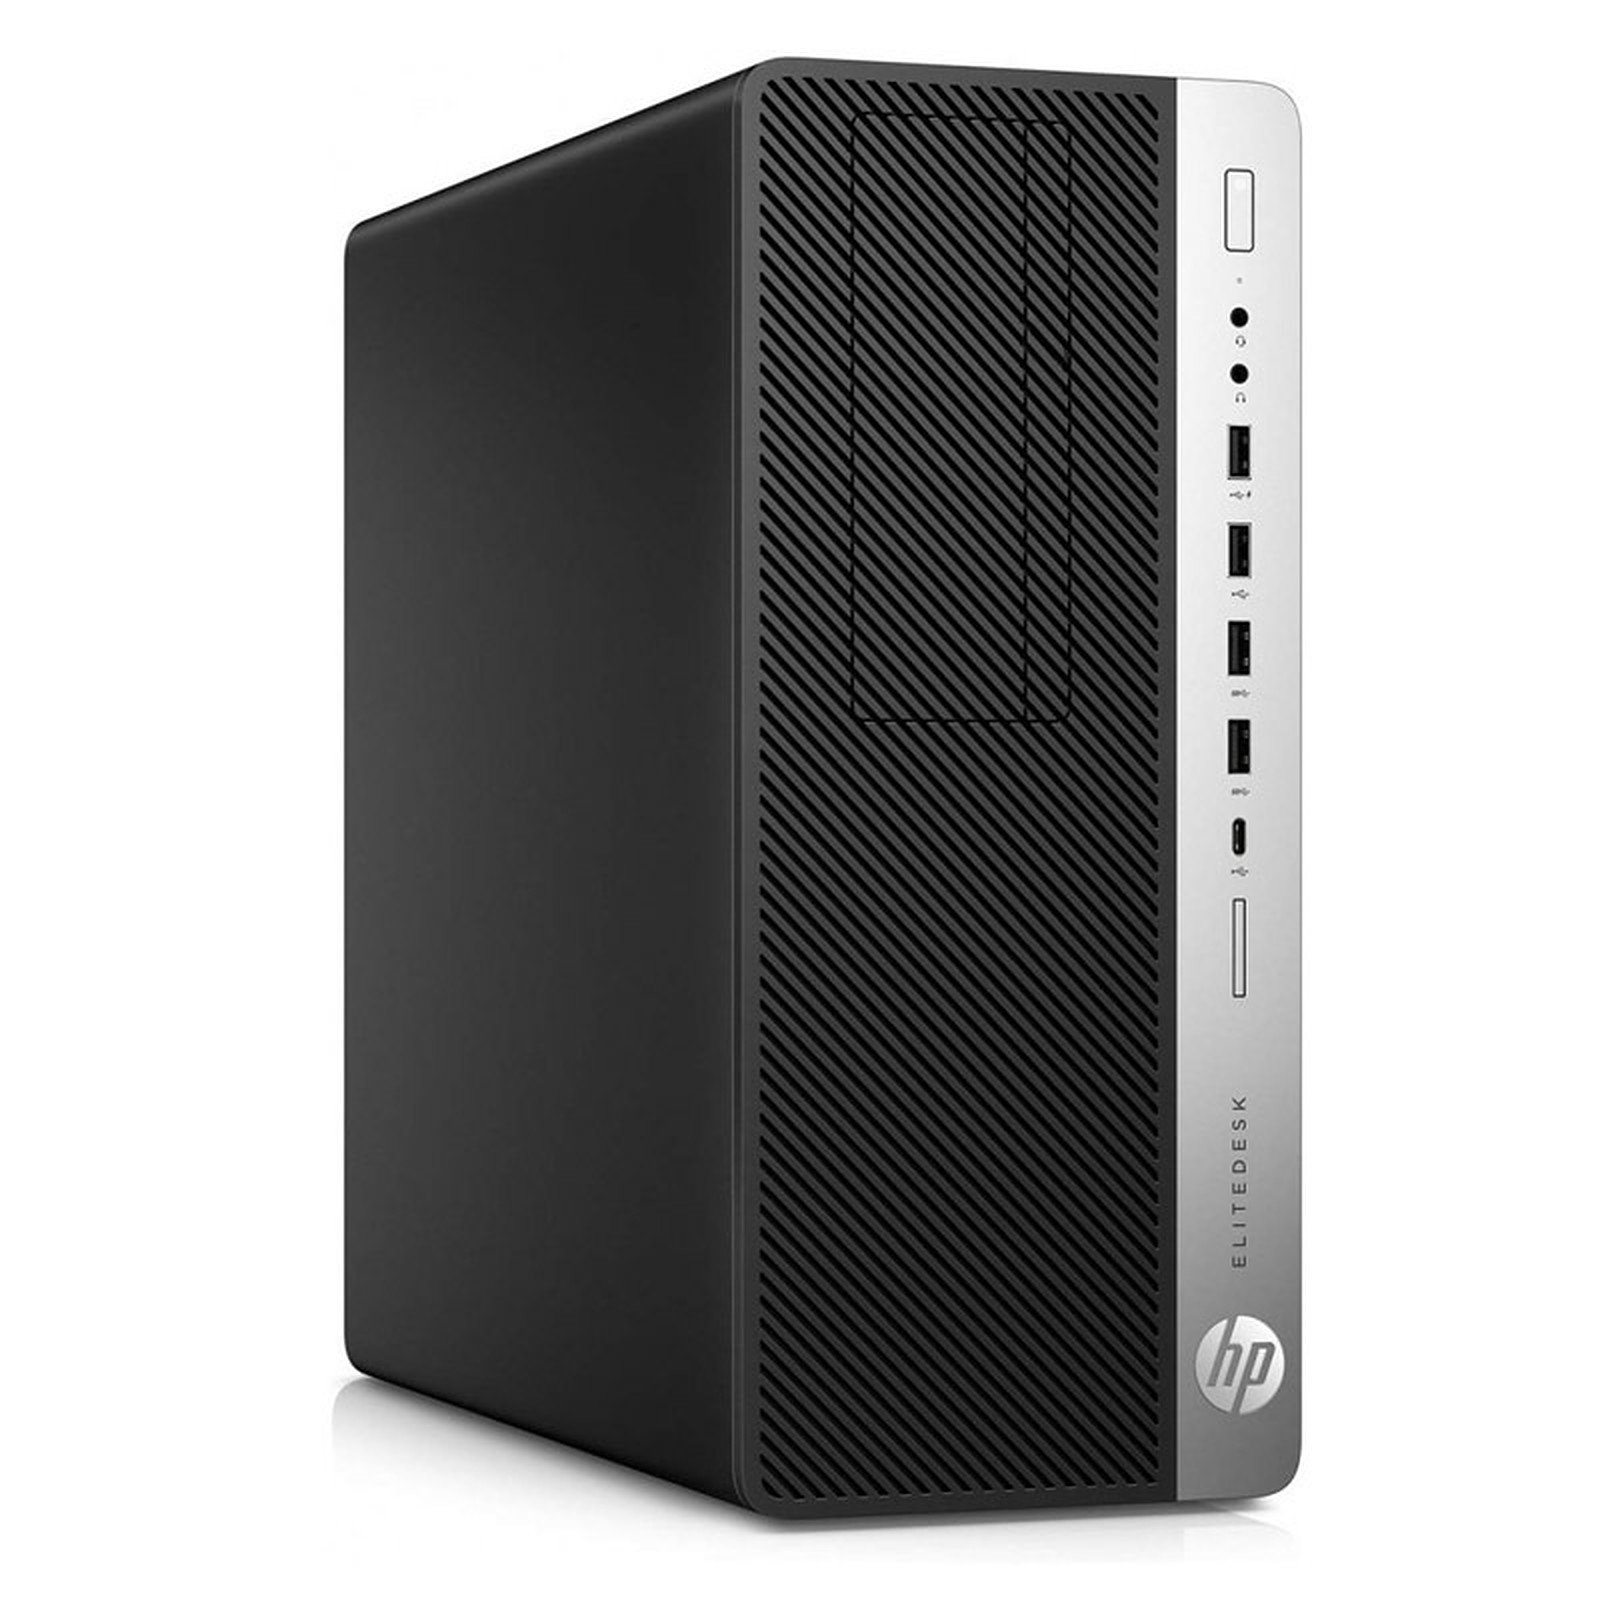 HP EliteDesk 800 G3 TWR (I56541) · Reconditionne - PC de bureau reconditionne HP